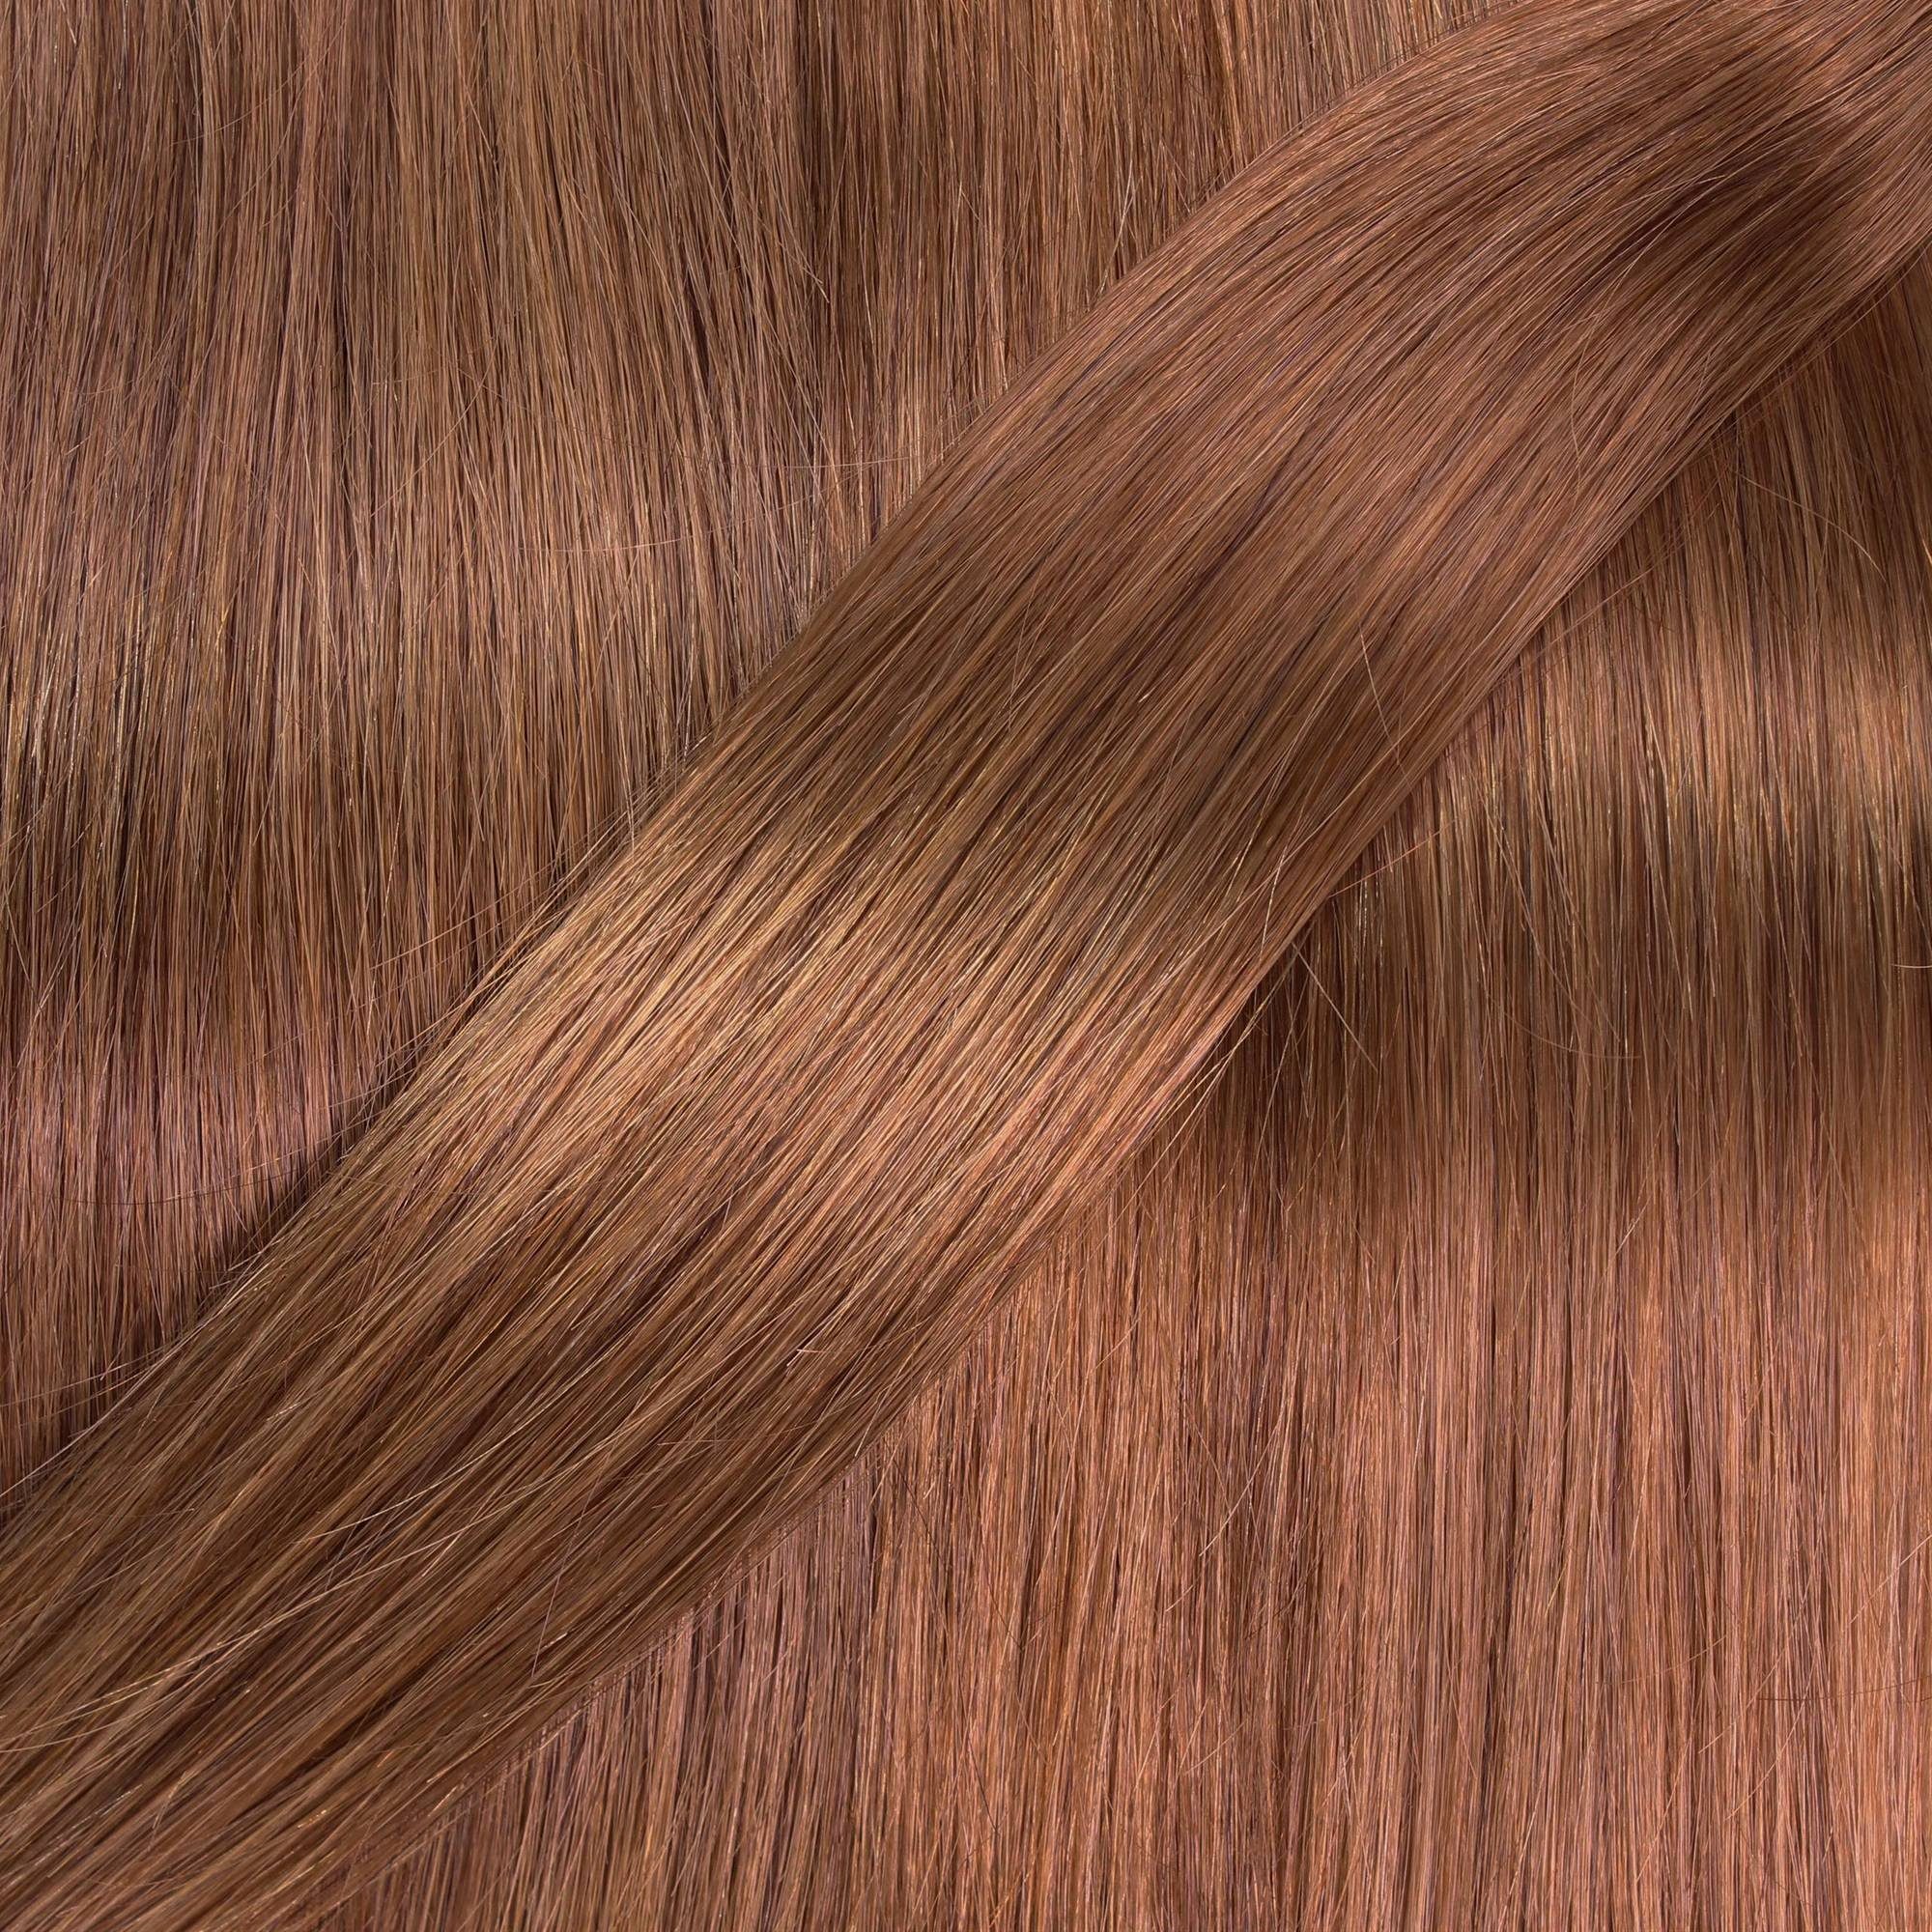 hair2heart Echthaar-Extension Bonding Hellblond 40cm Natur-Gold #8/03 Extensions 0.5g gewellt